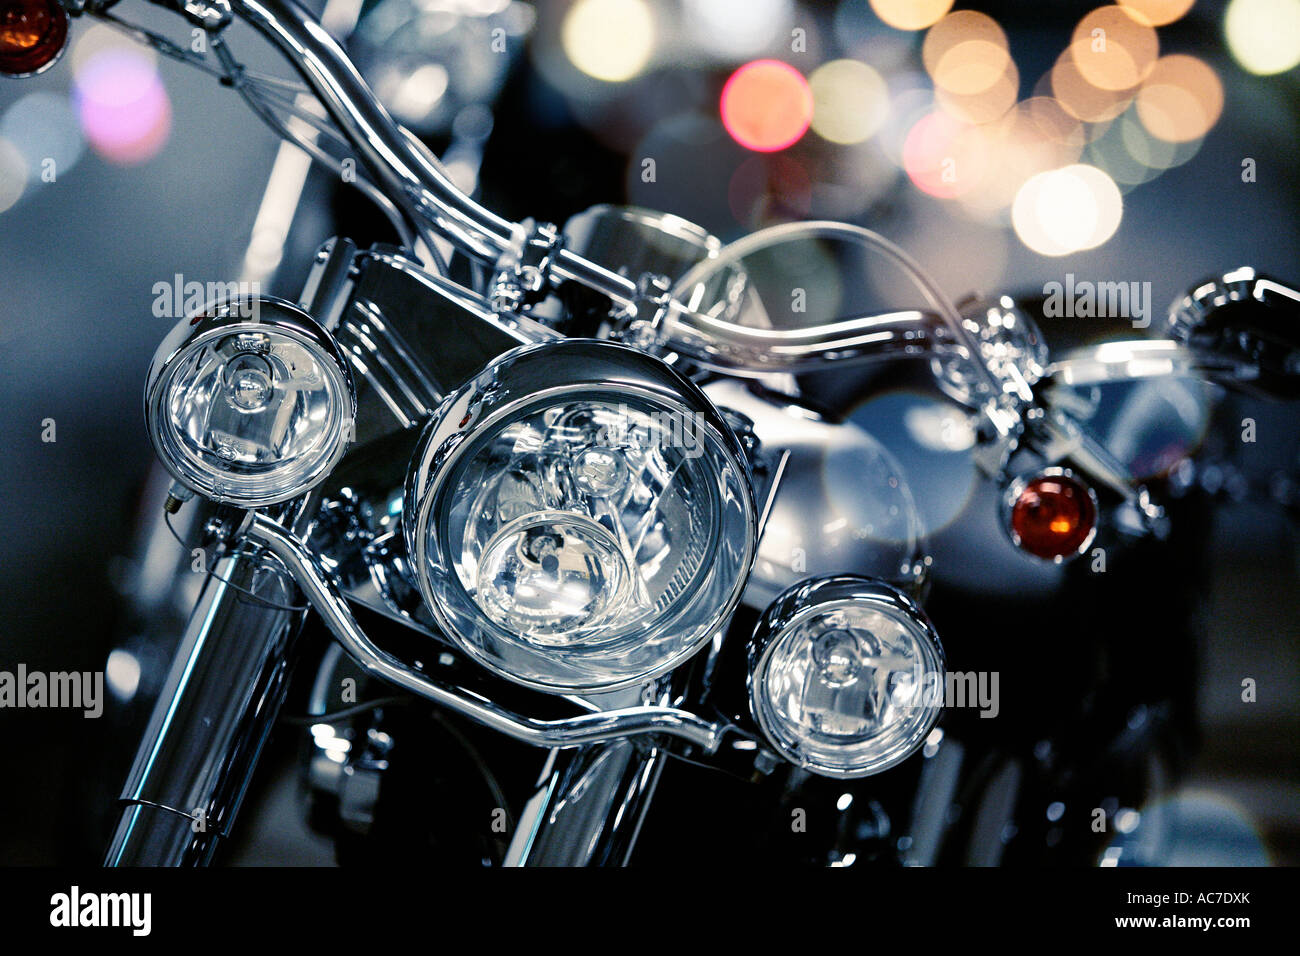 Dettaglio della Harley Davidson di notte Foto Stock